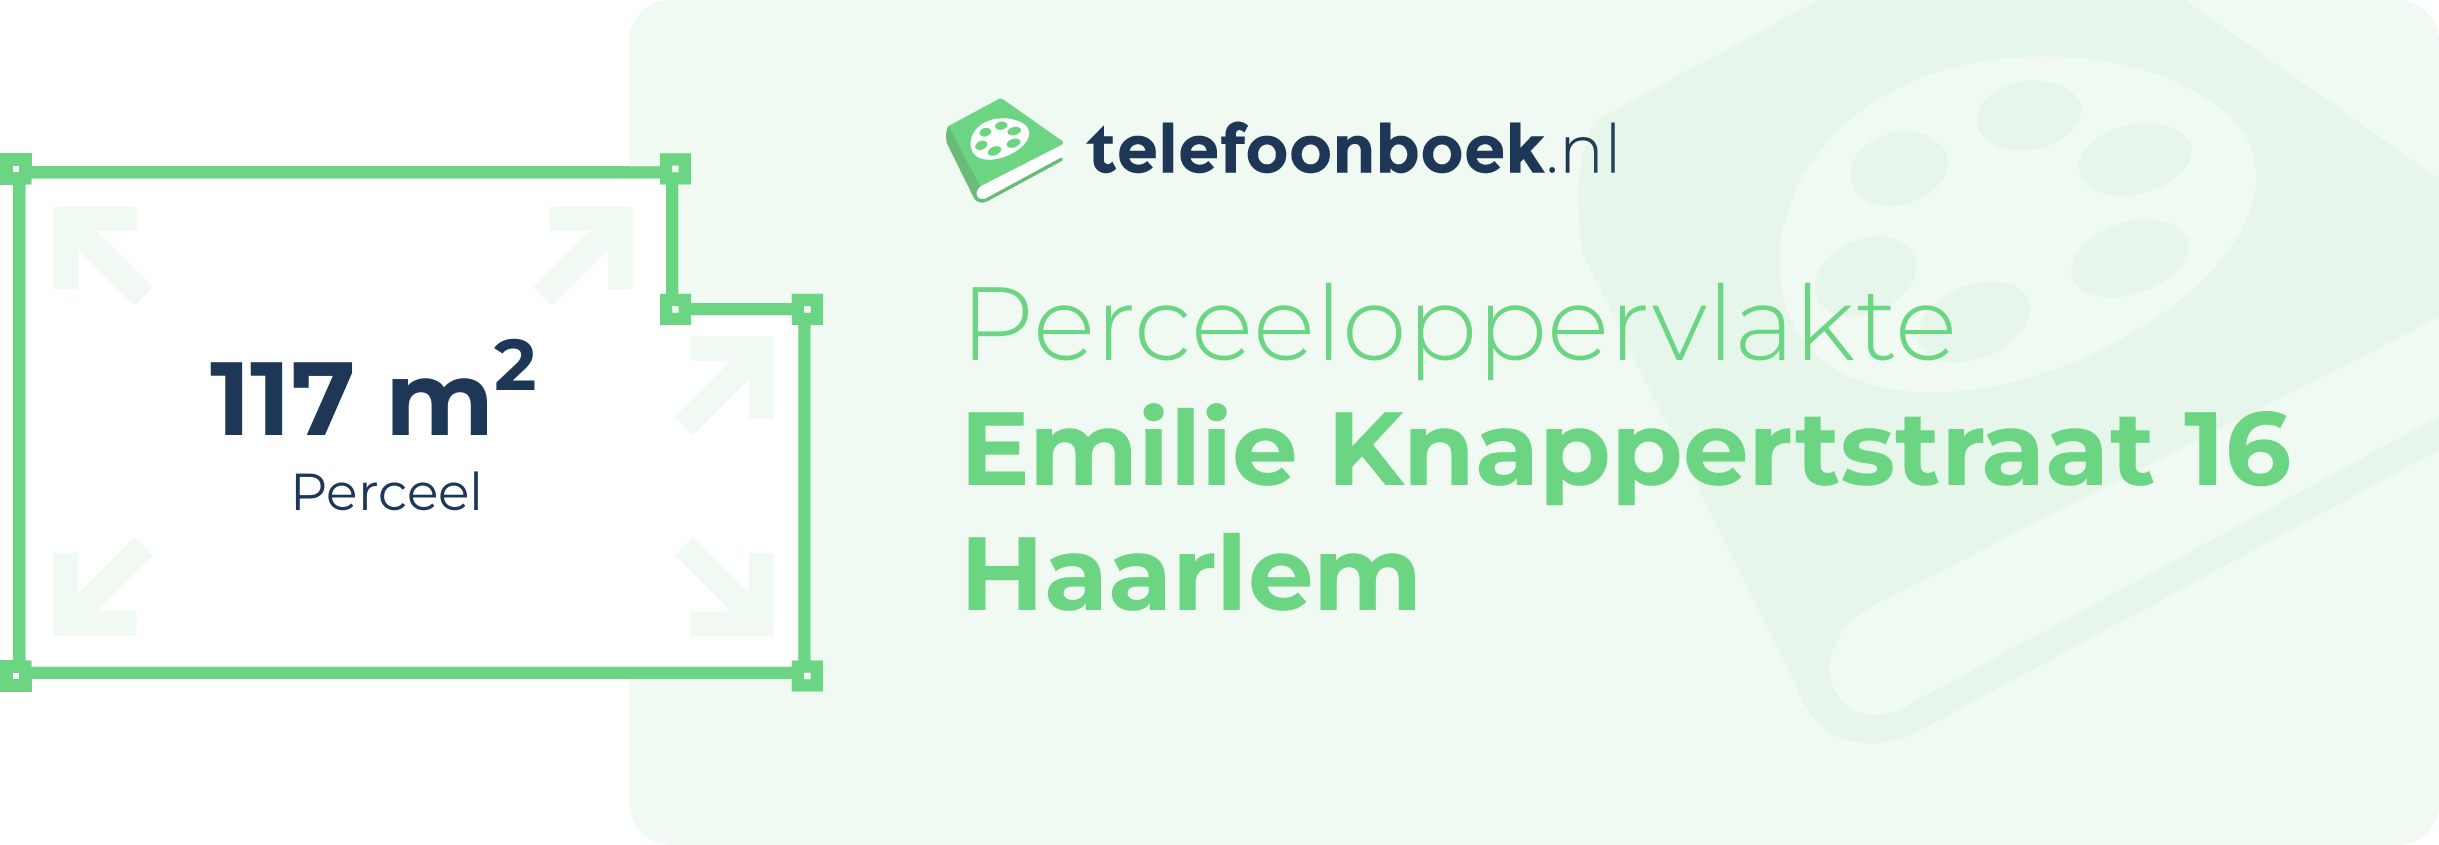 Perceeloppervlakte Emilie Knappertstraat 16 Haarlem